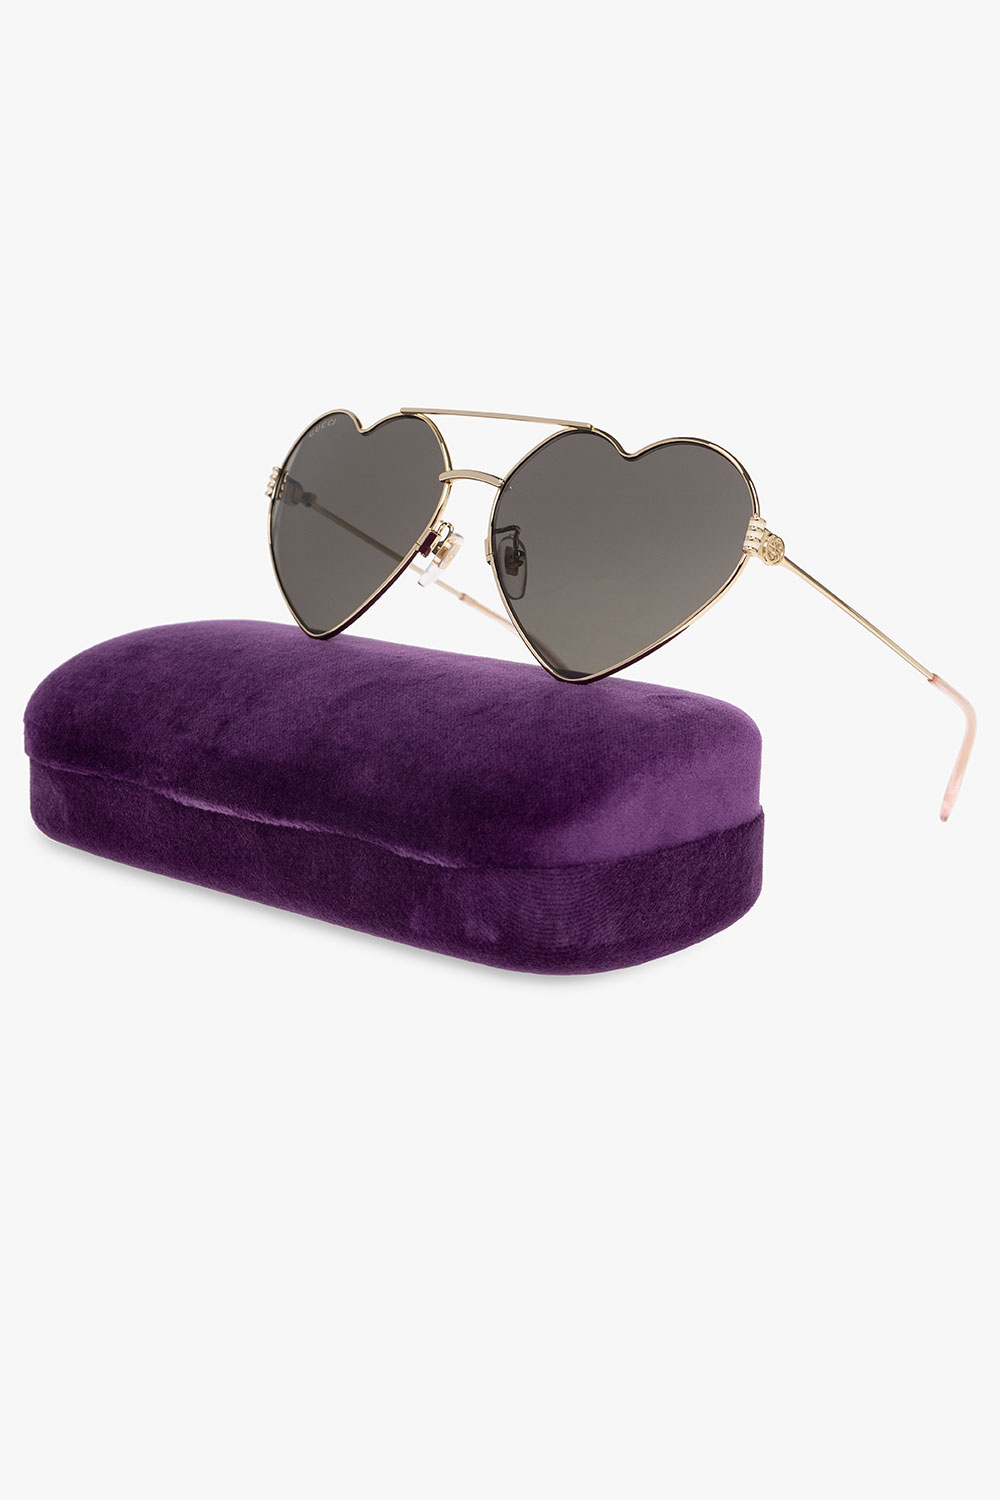 Gucci Horizon sunglasses